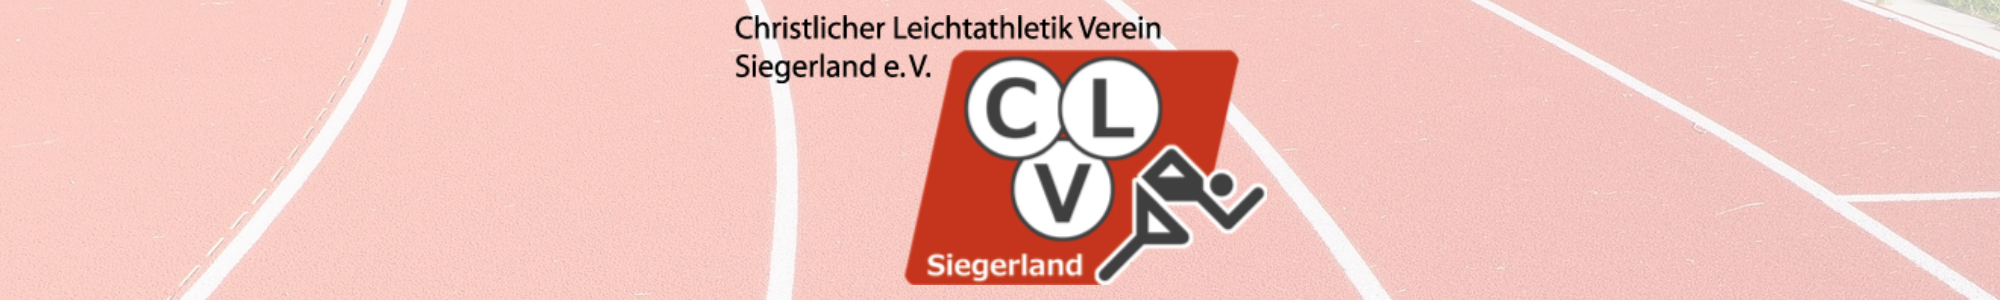 CLV-Siegerland